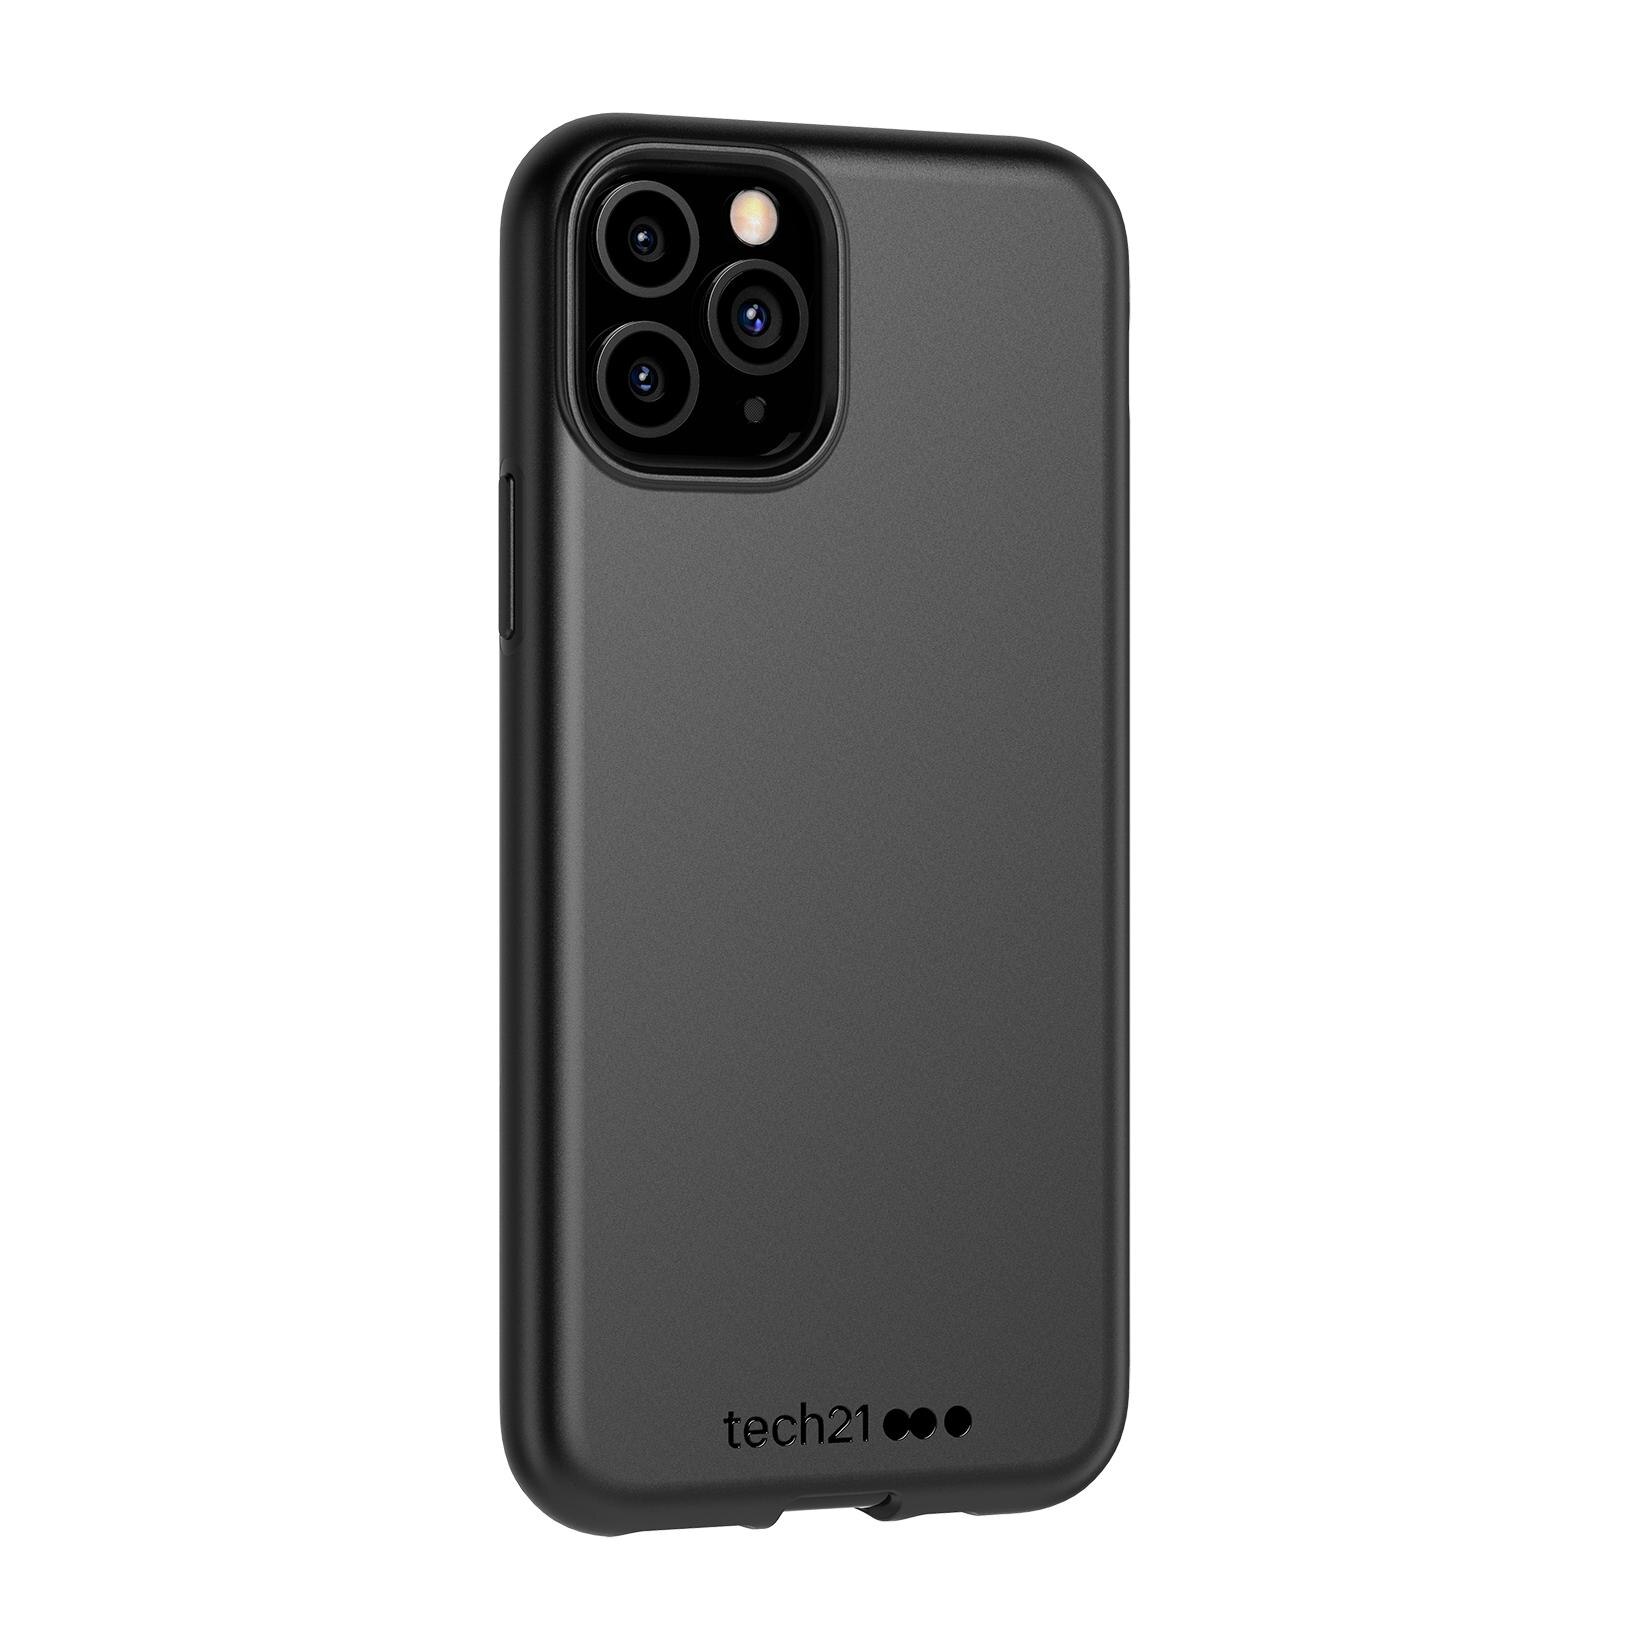 Studio Colour Case iPhone 11 Pro Max Black